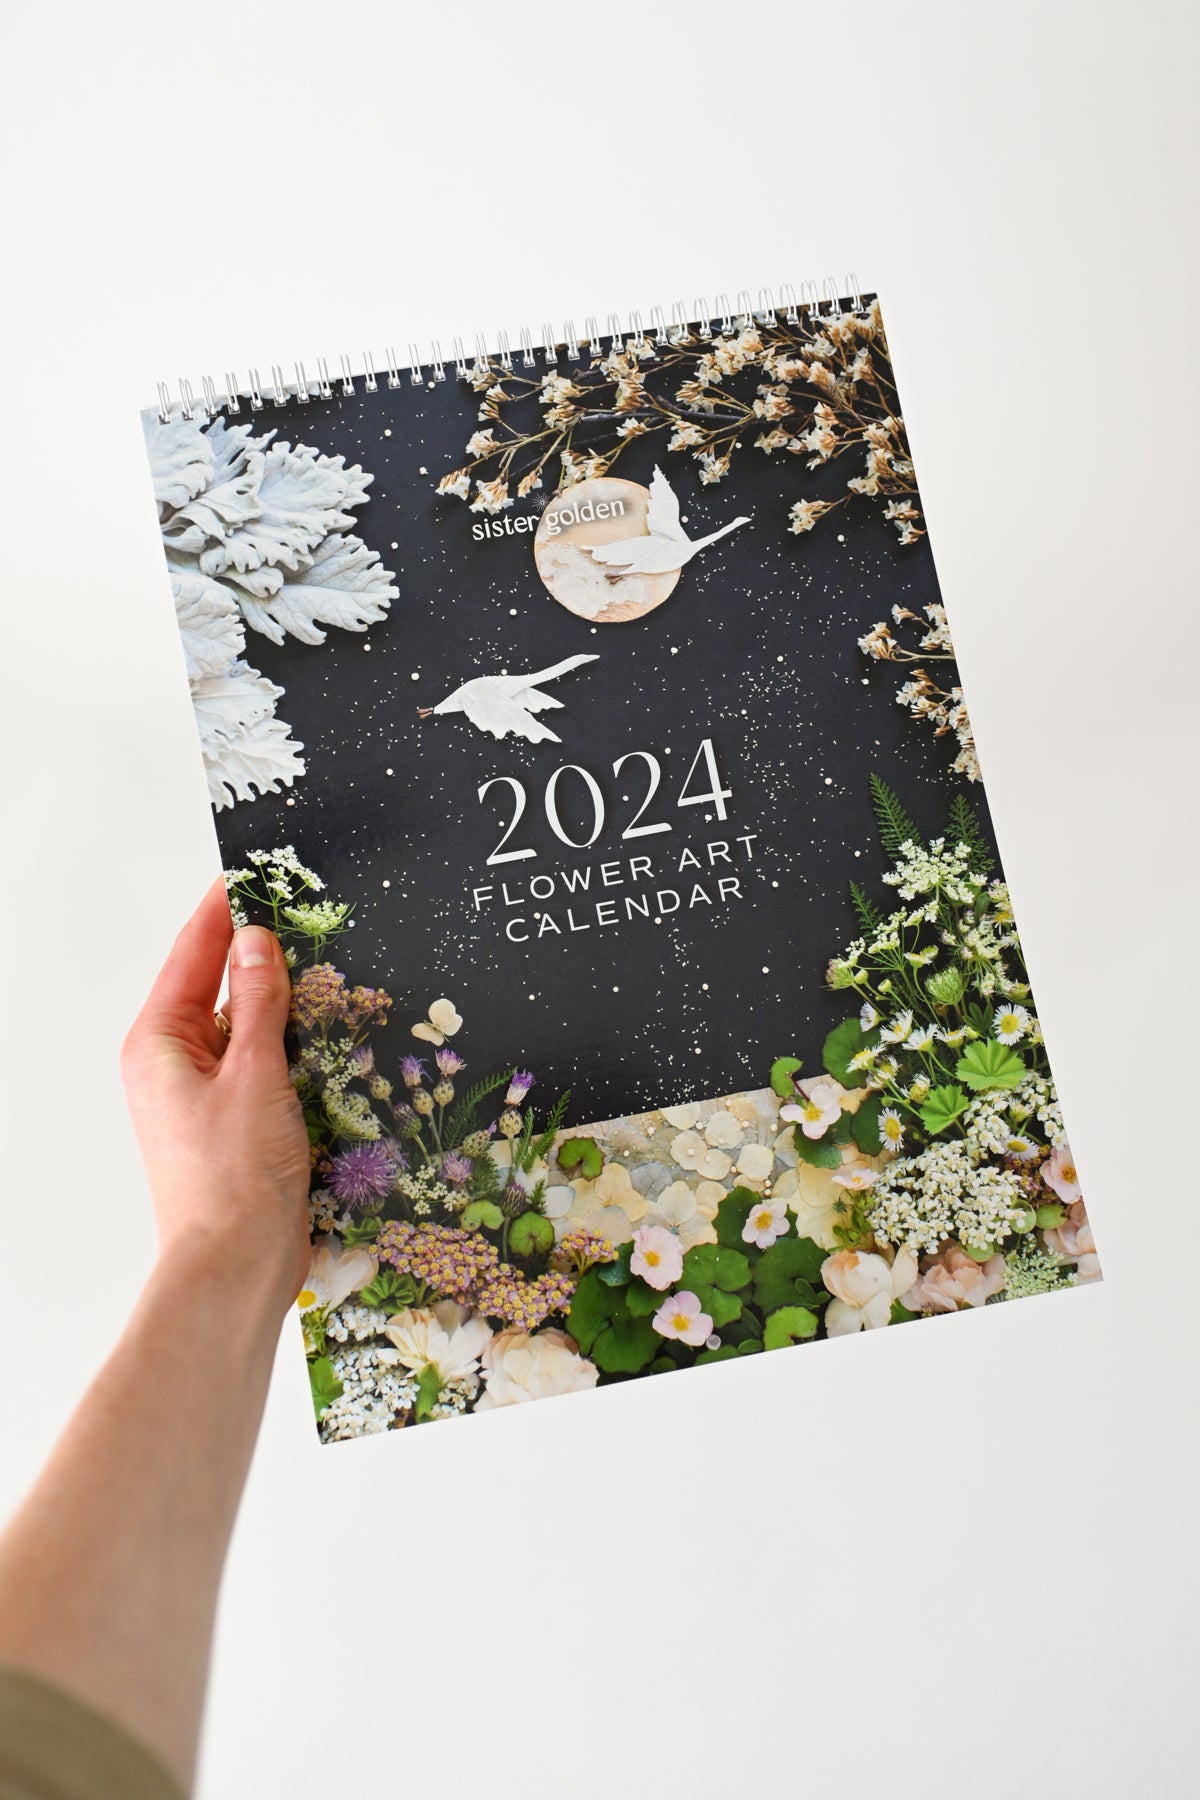 2024 Flower Art Calendar